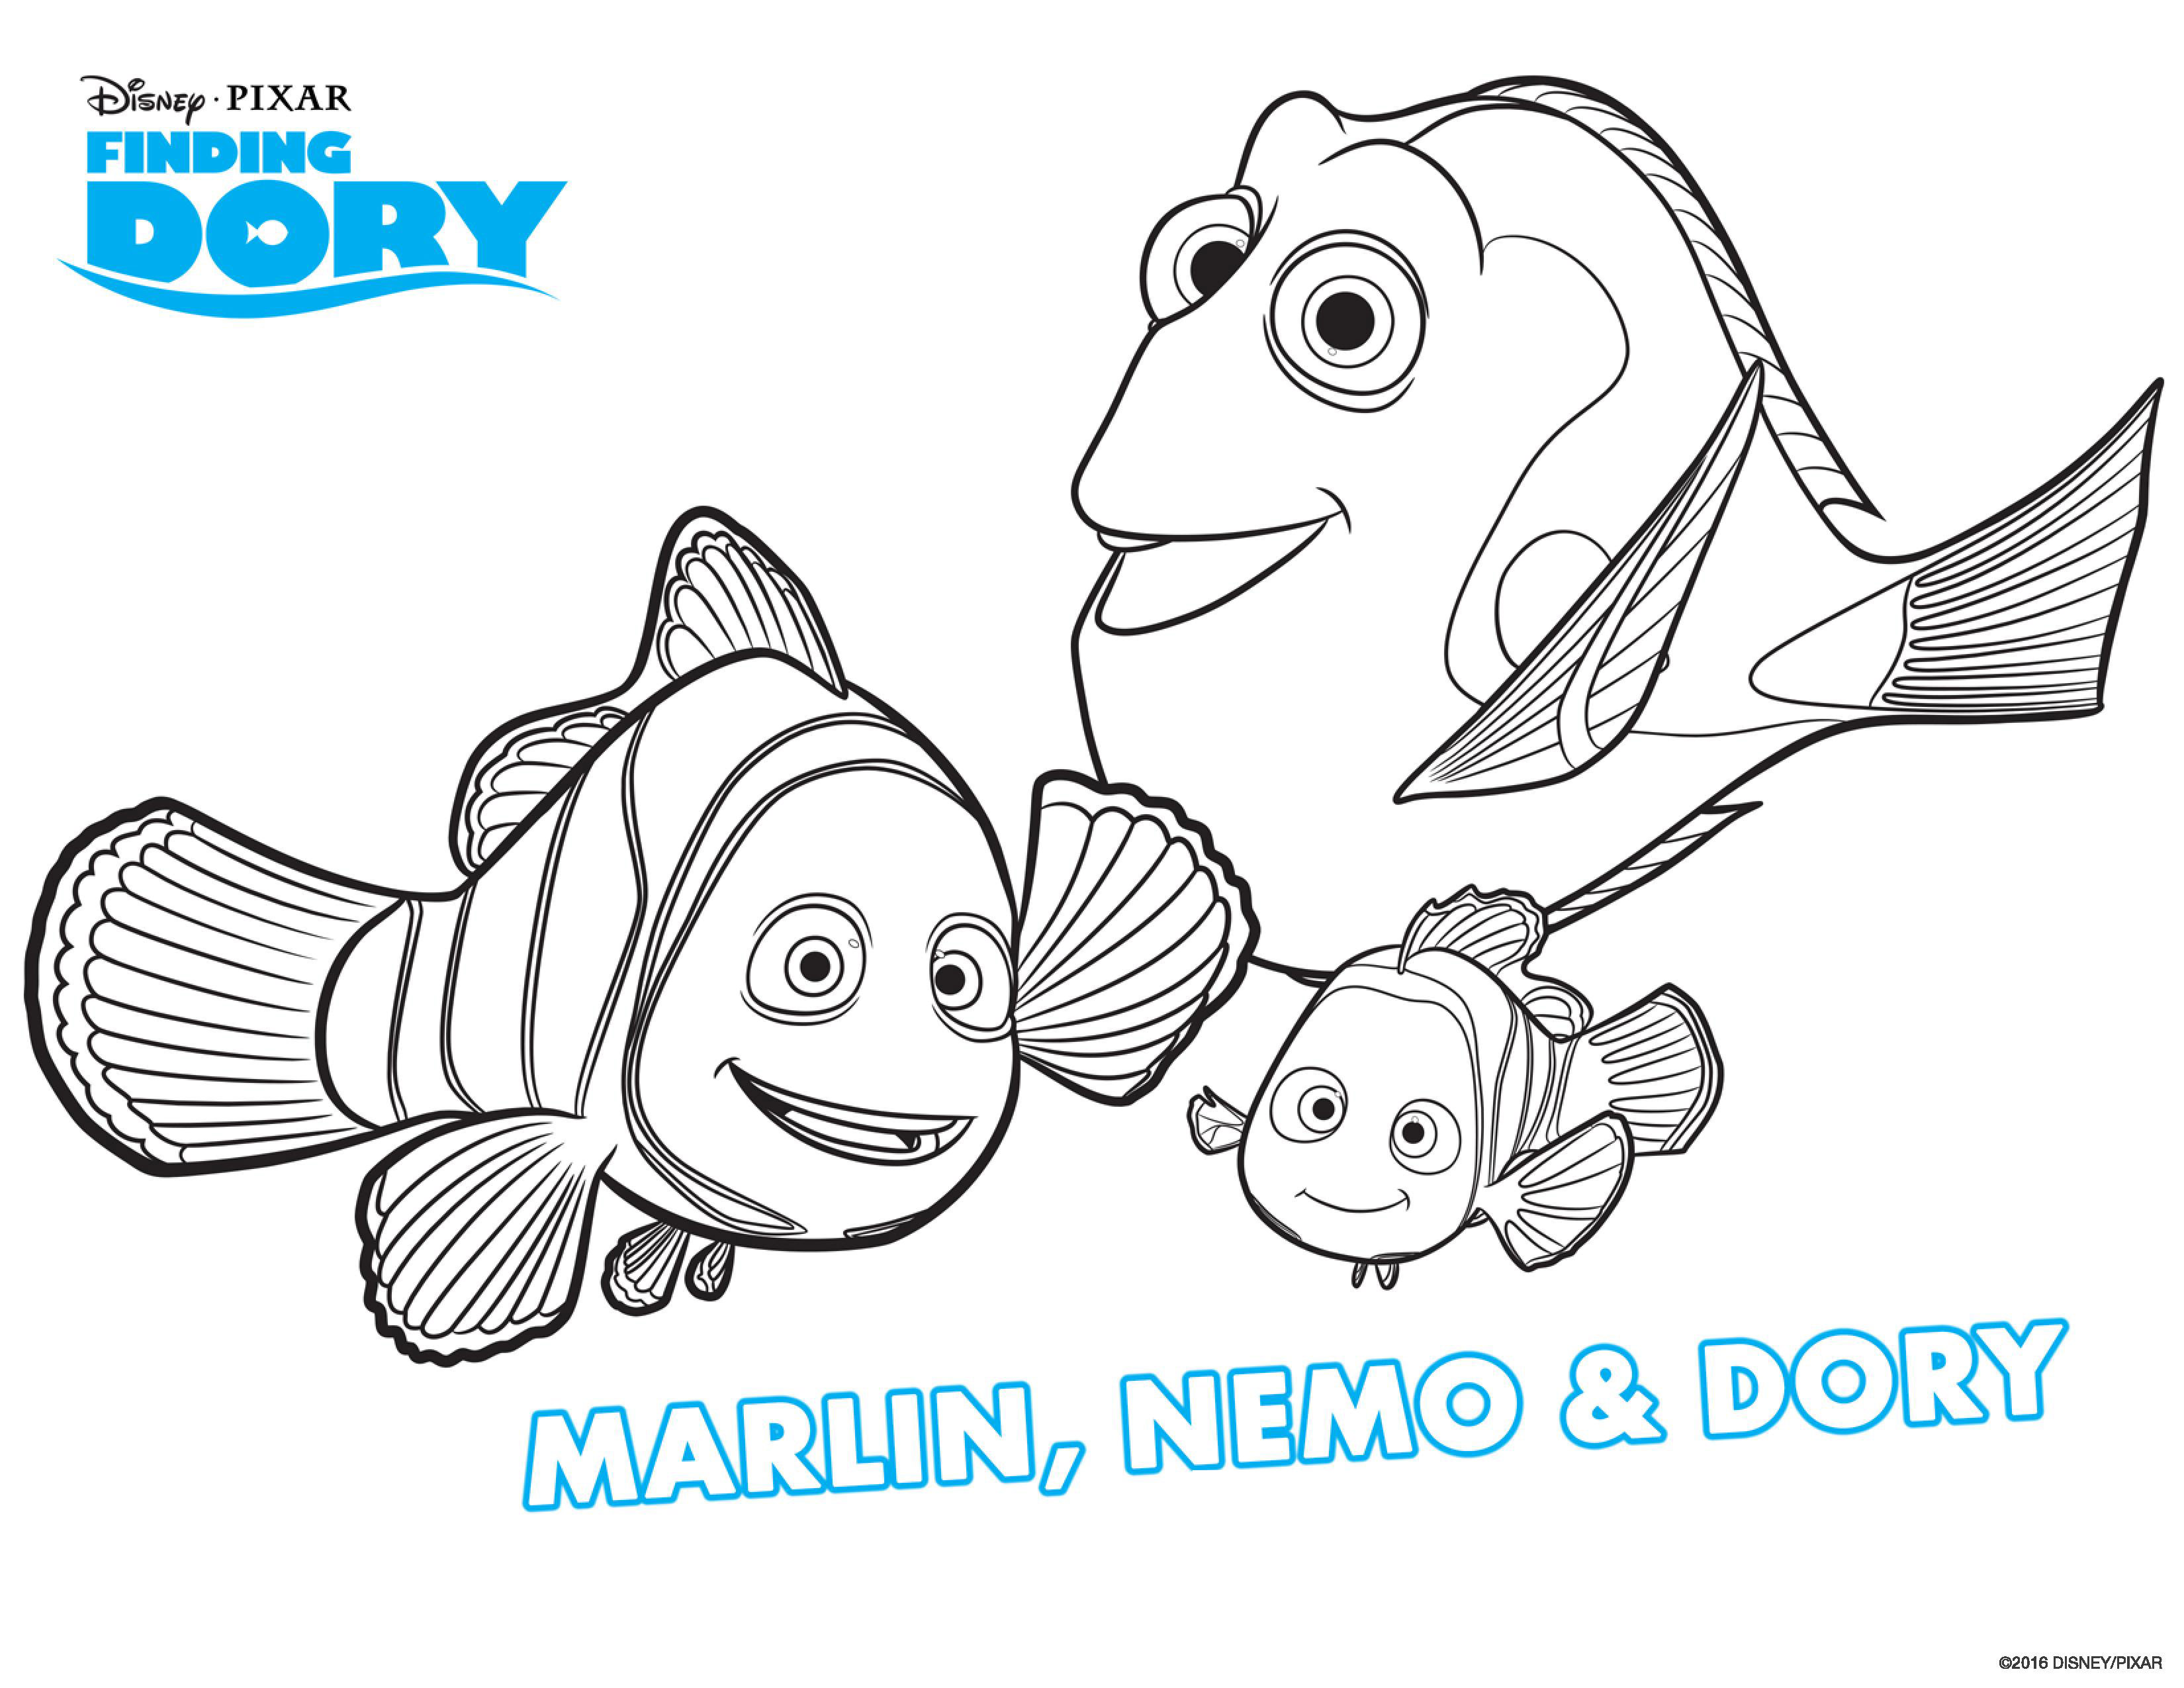 Dory, Marin e Nemo finalmente juntos novamente